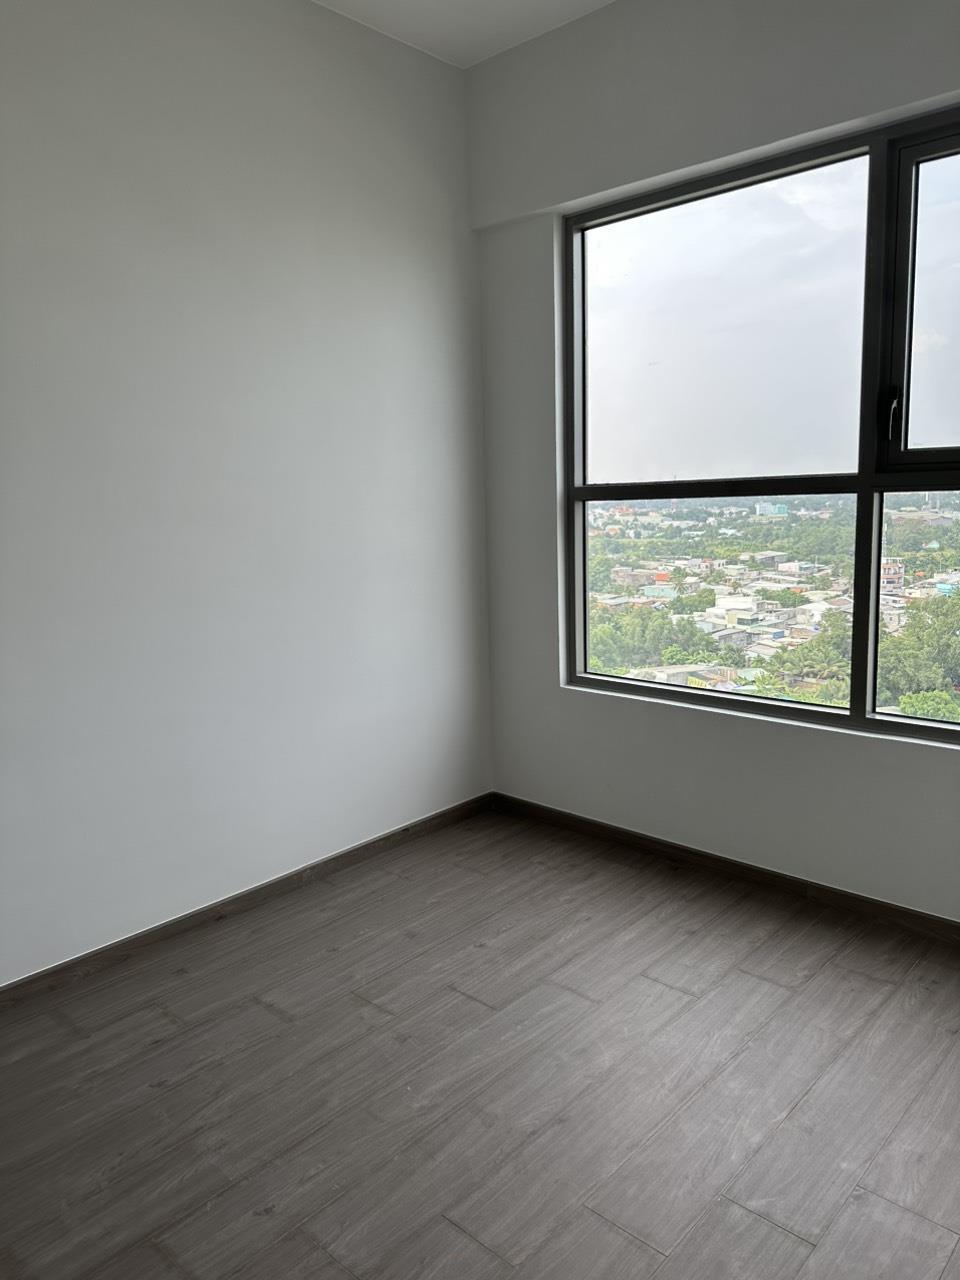 Cho thuê chung cư mới West Gate Park 59 m² - 2 PN + 2 WC chỉ 5tr/th631206